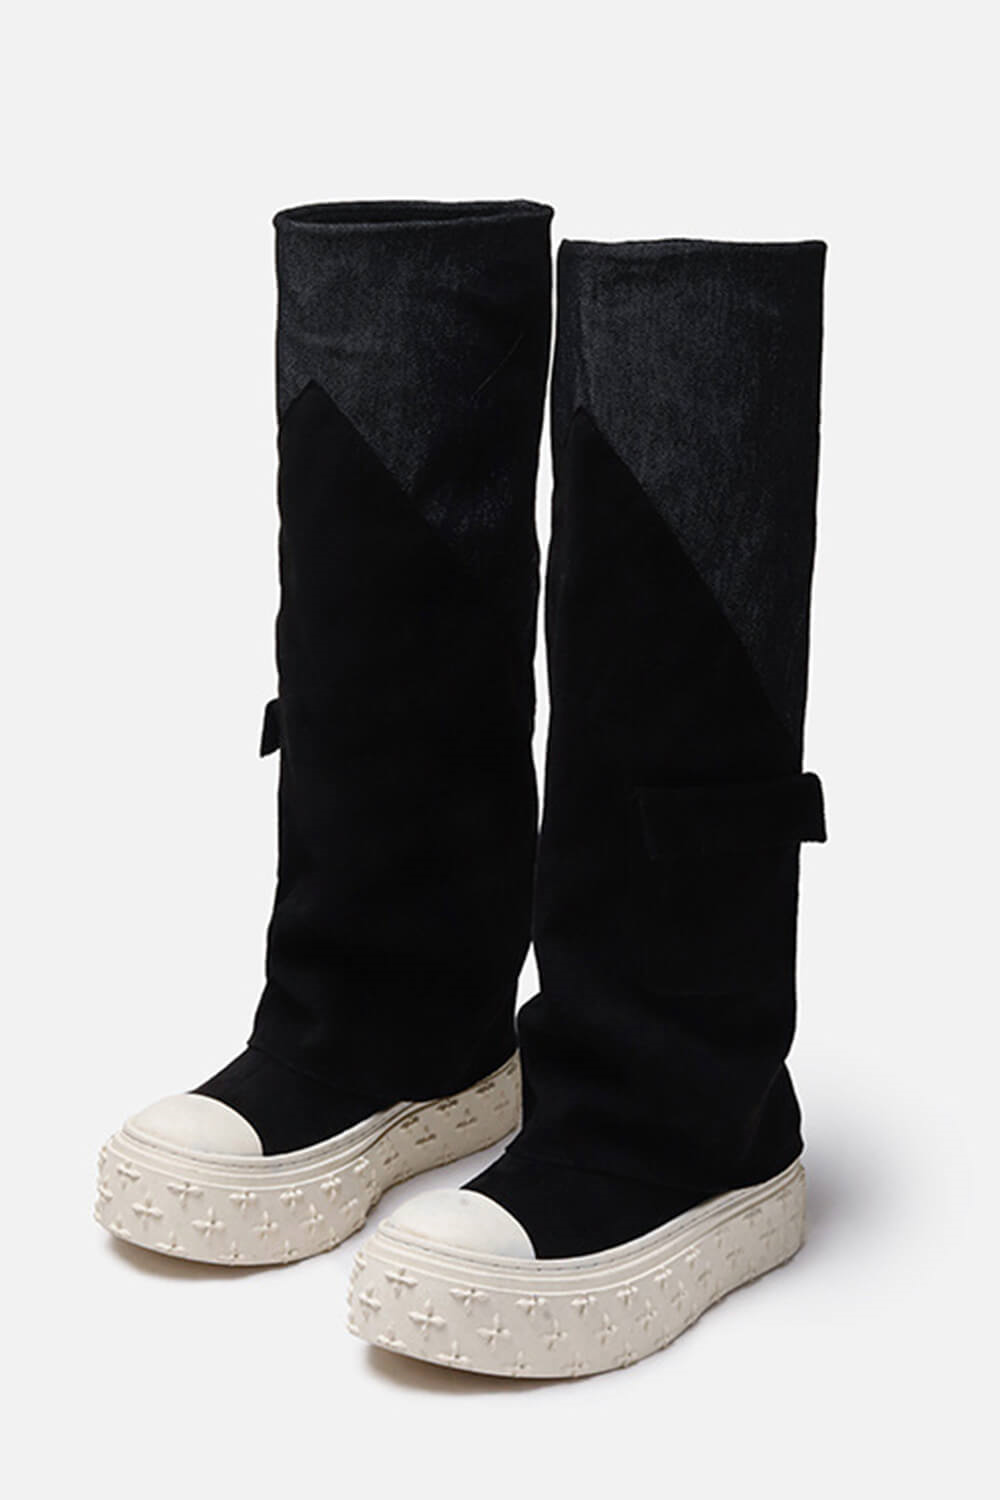 Canvas Denim Fold Over Knee High Sneaker With Pocket Details - Black